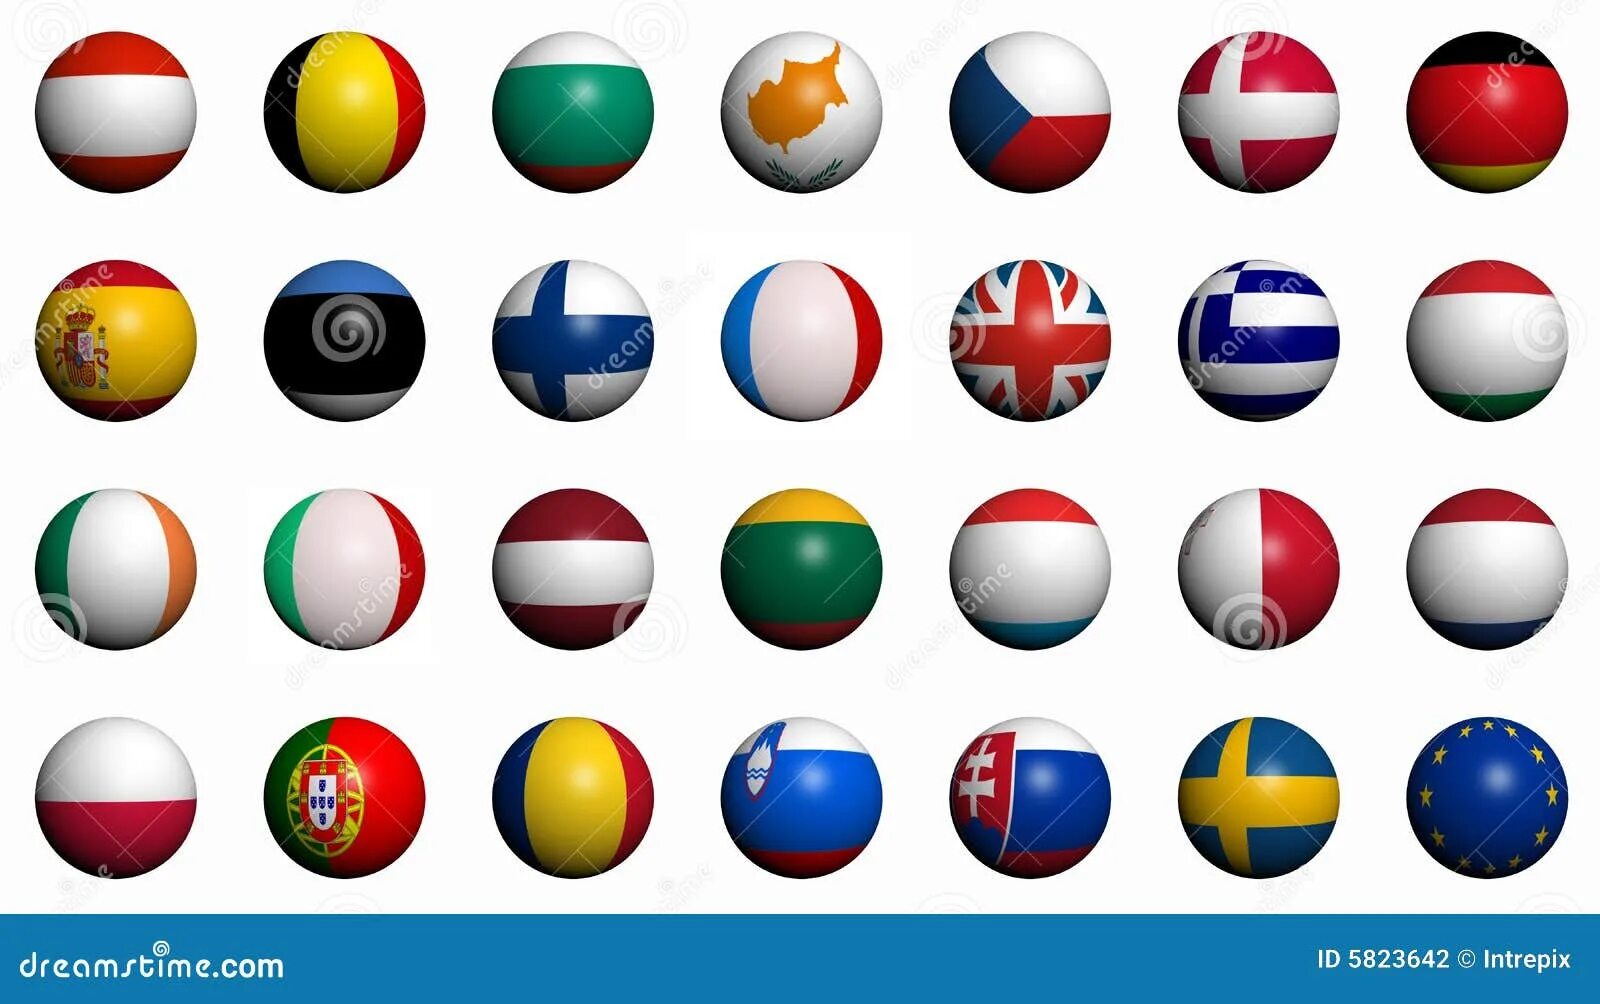 Флаги в шаре. Флаги стран в виде шара. Флаги стран в виде шариков. Все круглые флаги стран.